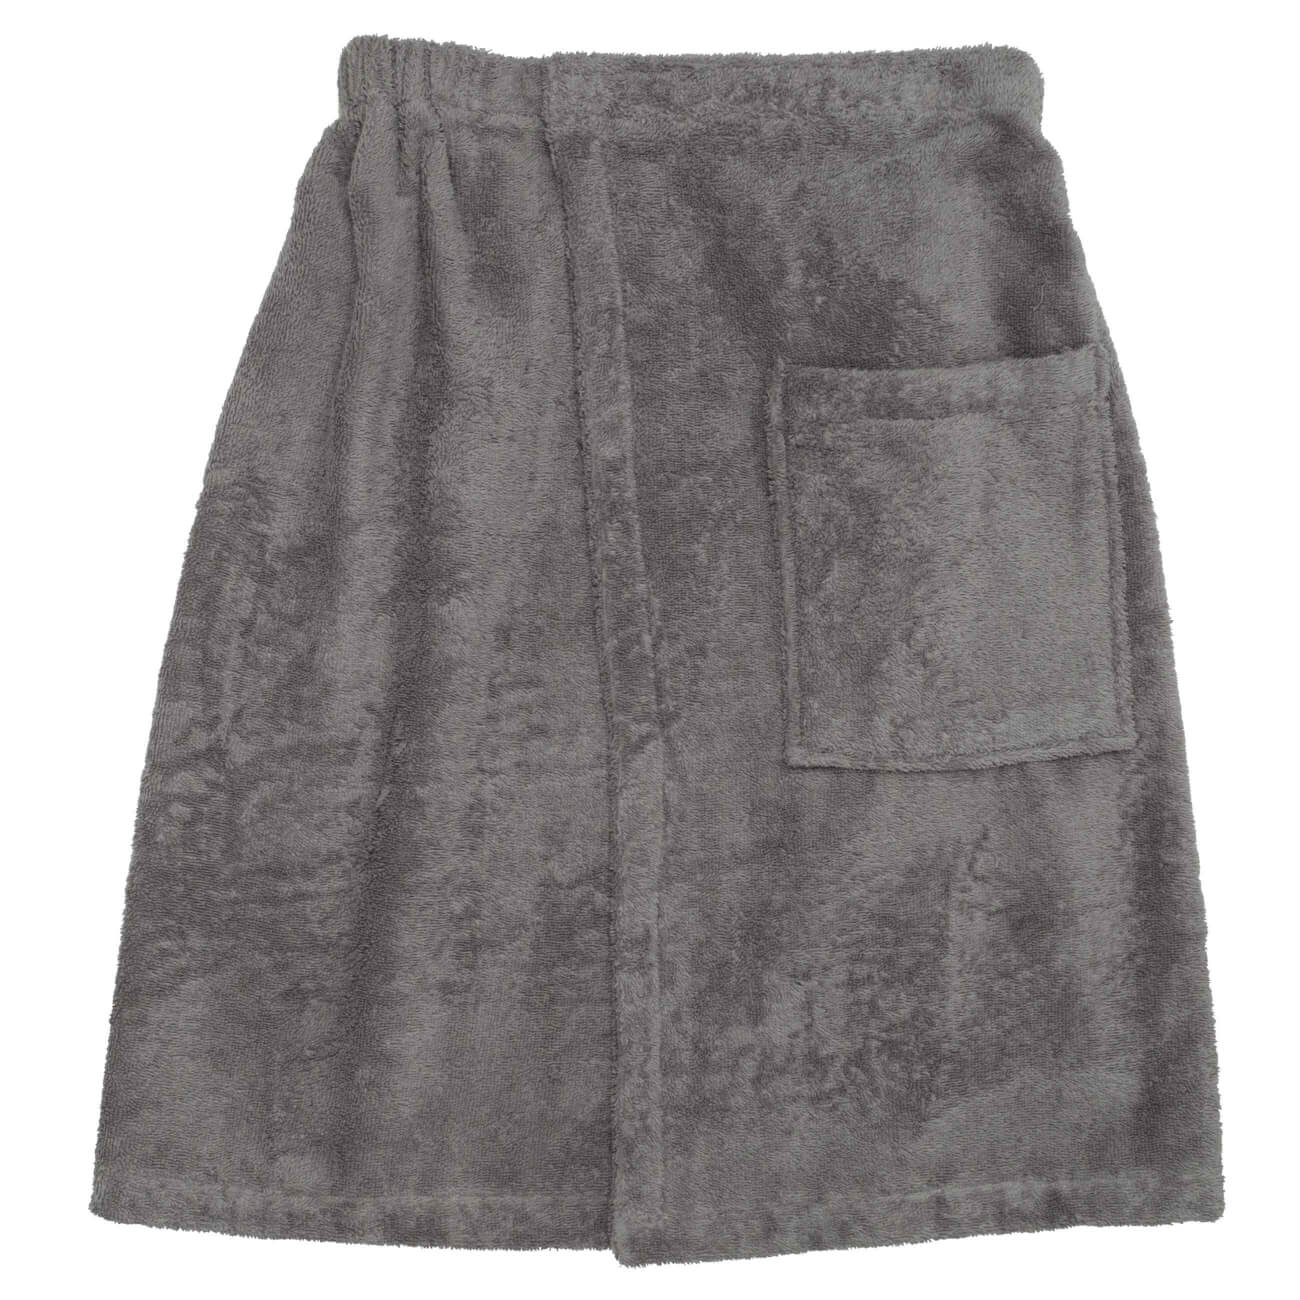 Полотенце-килт мужское, 70х160 см, на липучке, хлопок, темно-серое, Spa towel